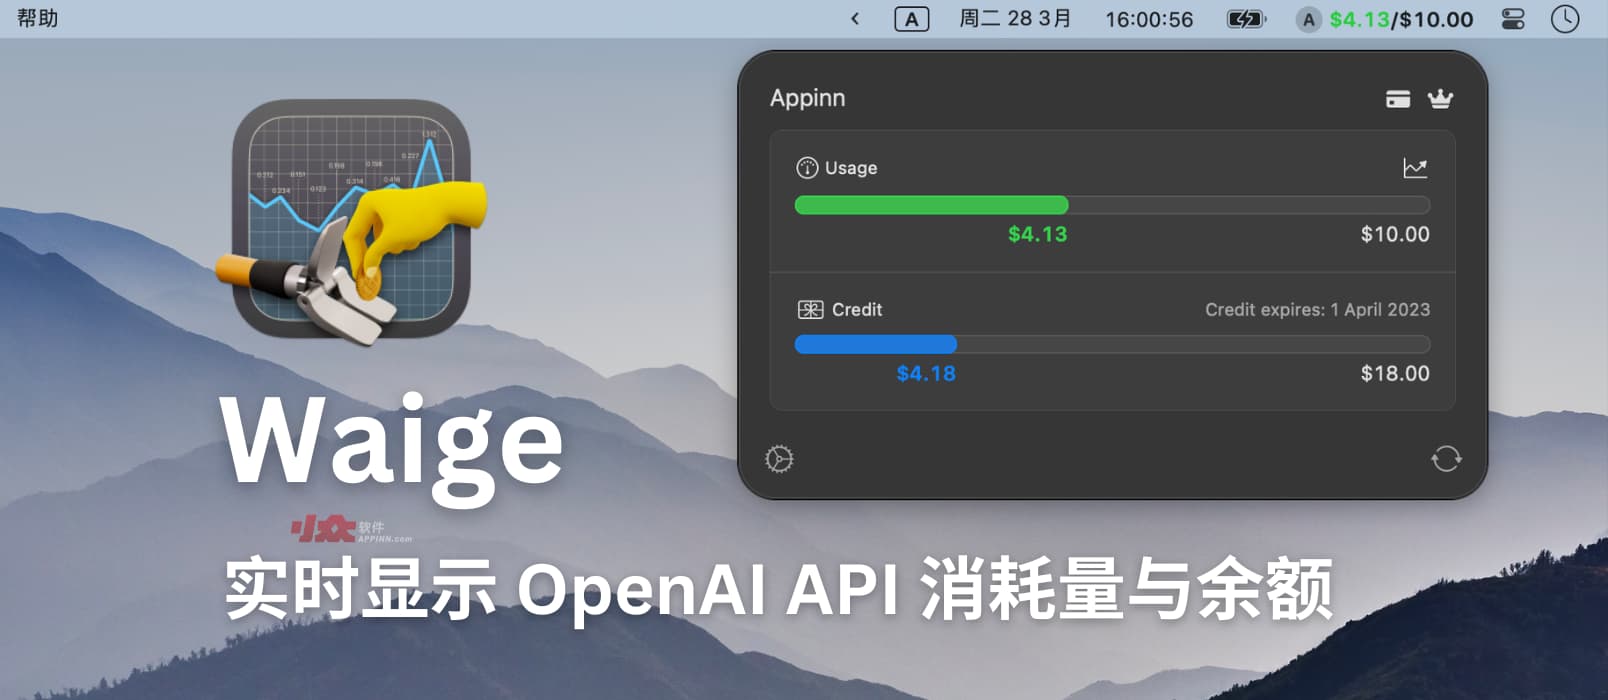 Waige - 在 Mac 菜单栏显示 OpenAI API 消耗量与余额[开发者必备]